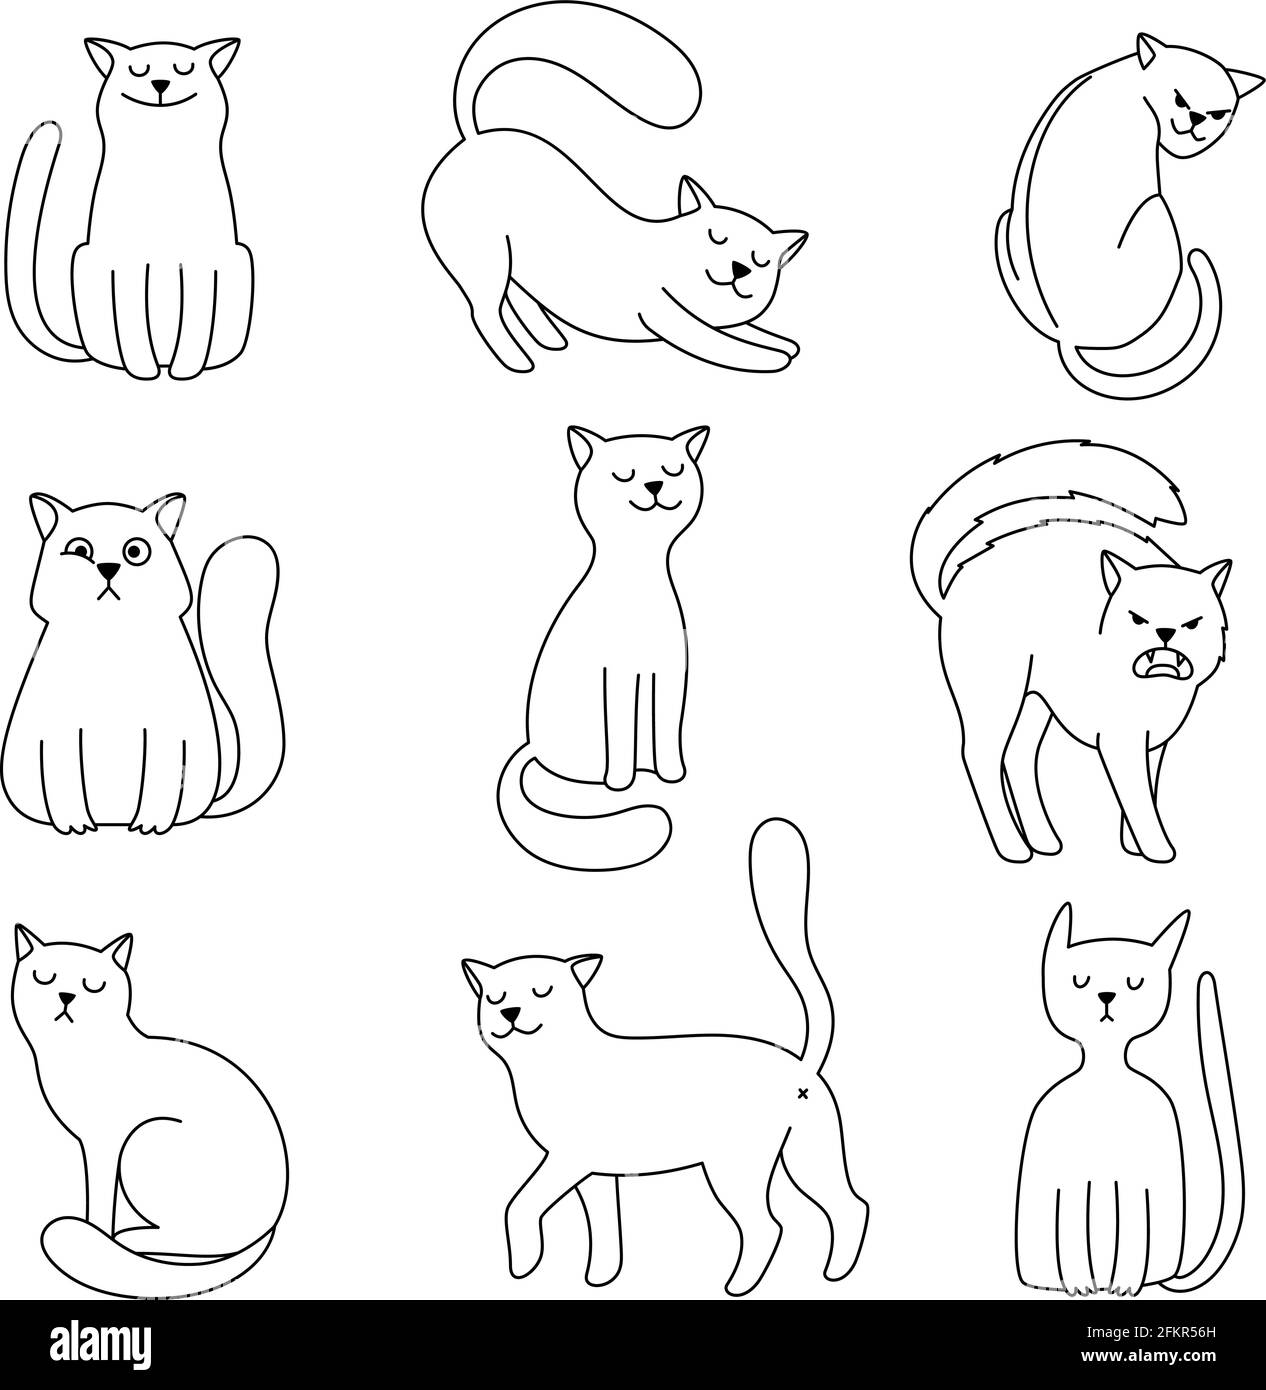 Croquis de caracteres Cat. Lindo gatito colección dibujada a mano, gatos  emociones divertidas y hambrientas, feliz y enojado ilustración vectorial  clipart Imagen Vector de stock - Alamy